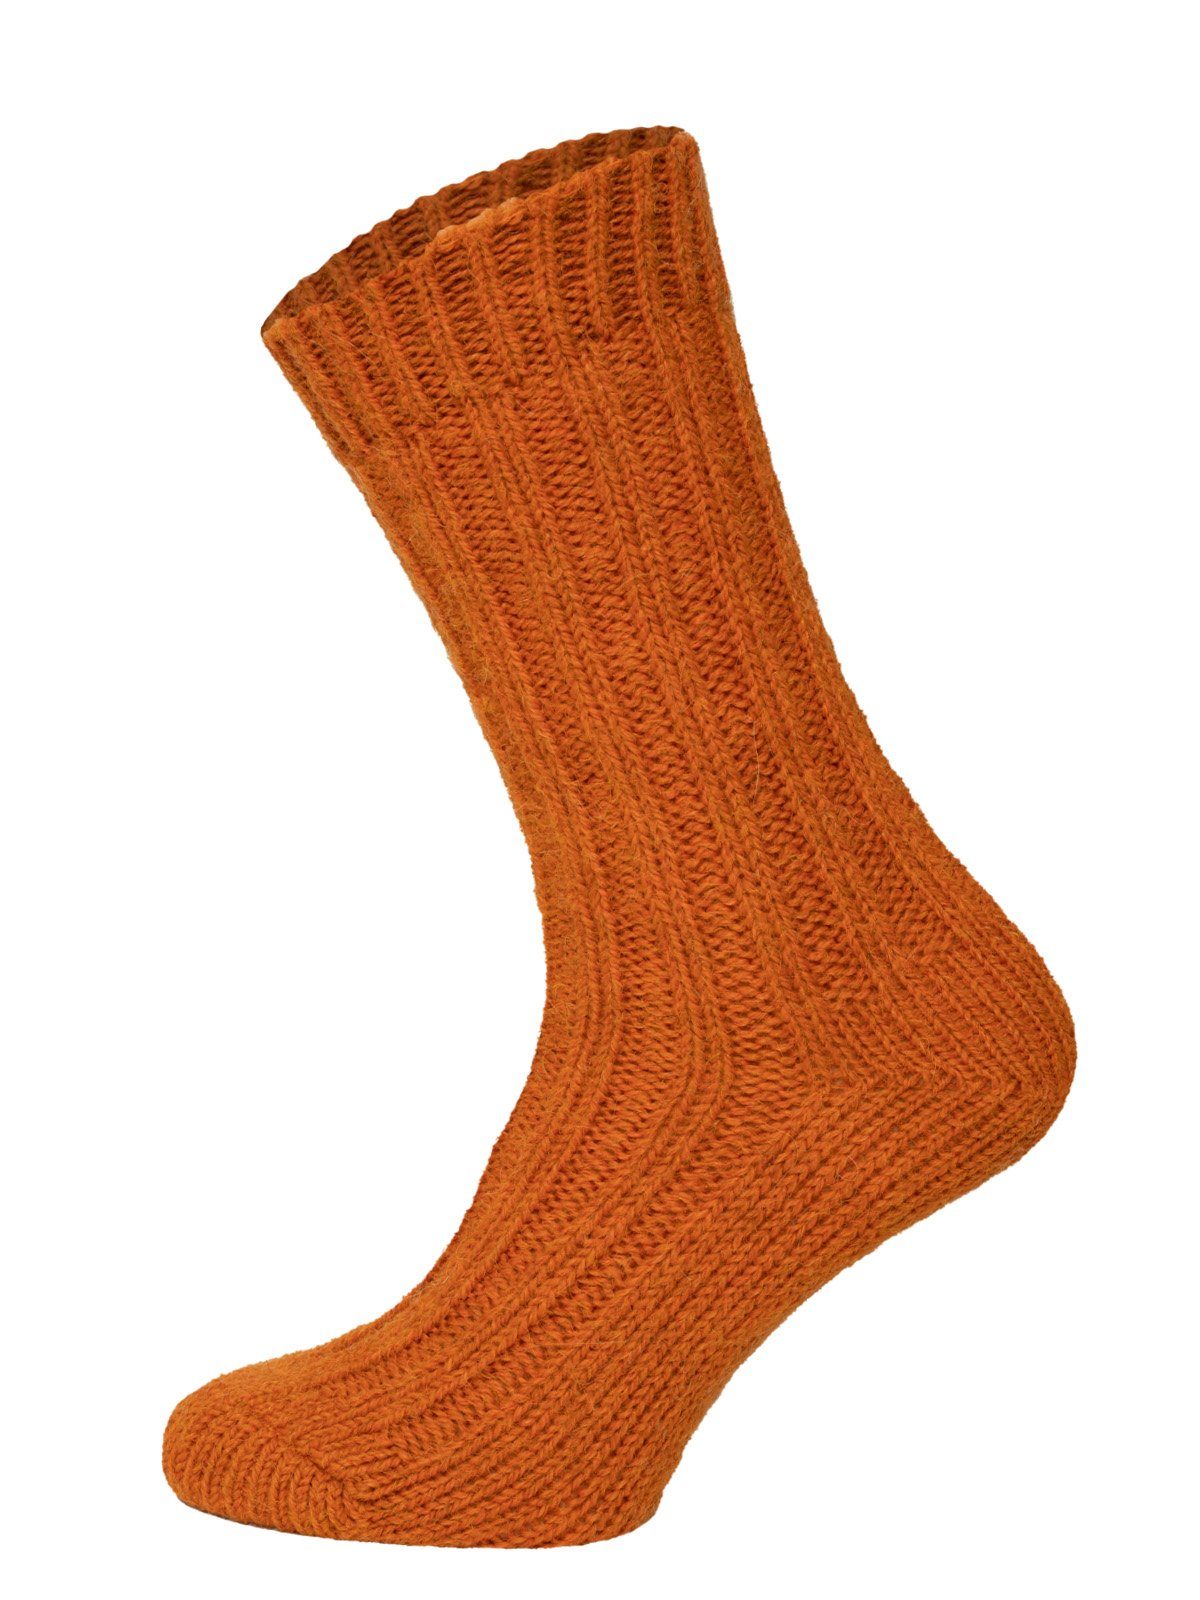 HomeOfSocks Socken Bunte Socken mit Umschlag mit Wolle und Alpakawolle Strapazierfähige und warme Socken mit 40% Wollanteil und Alpakawolle Orange